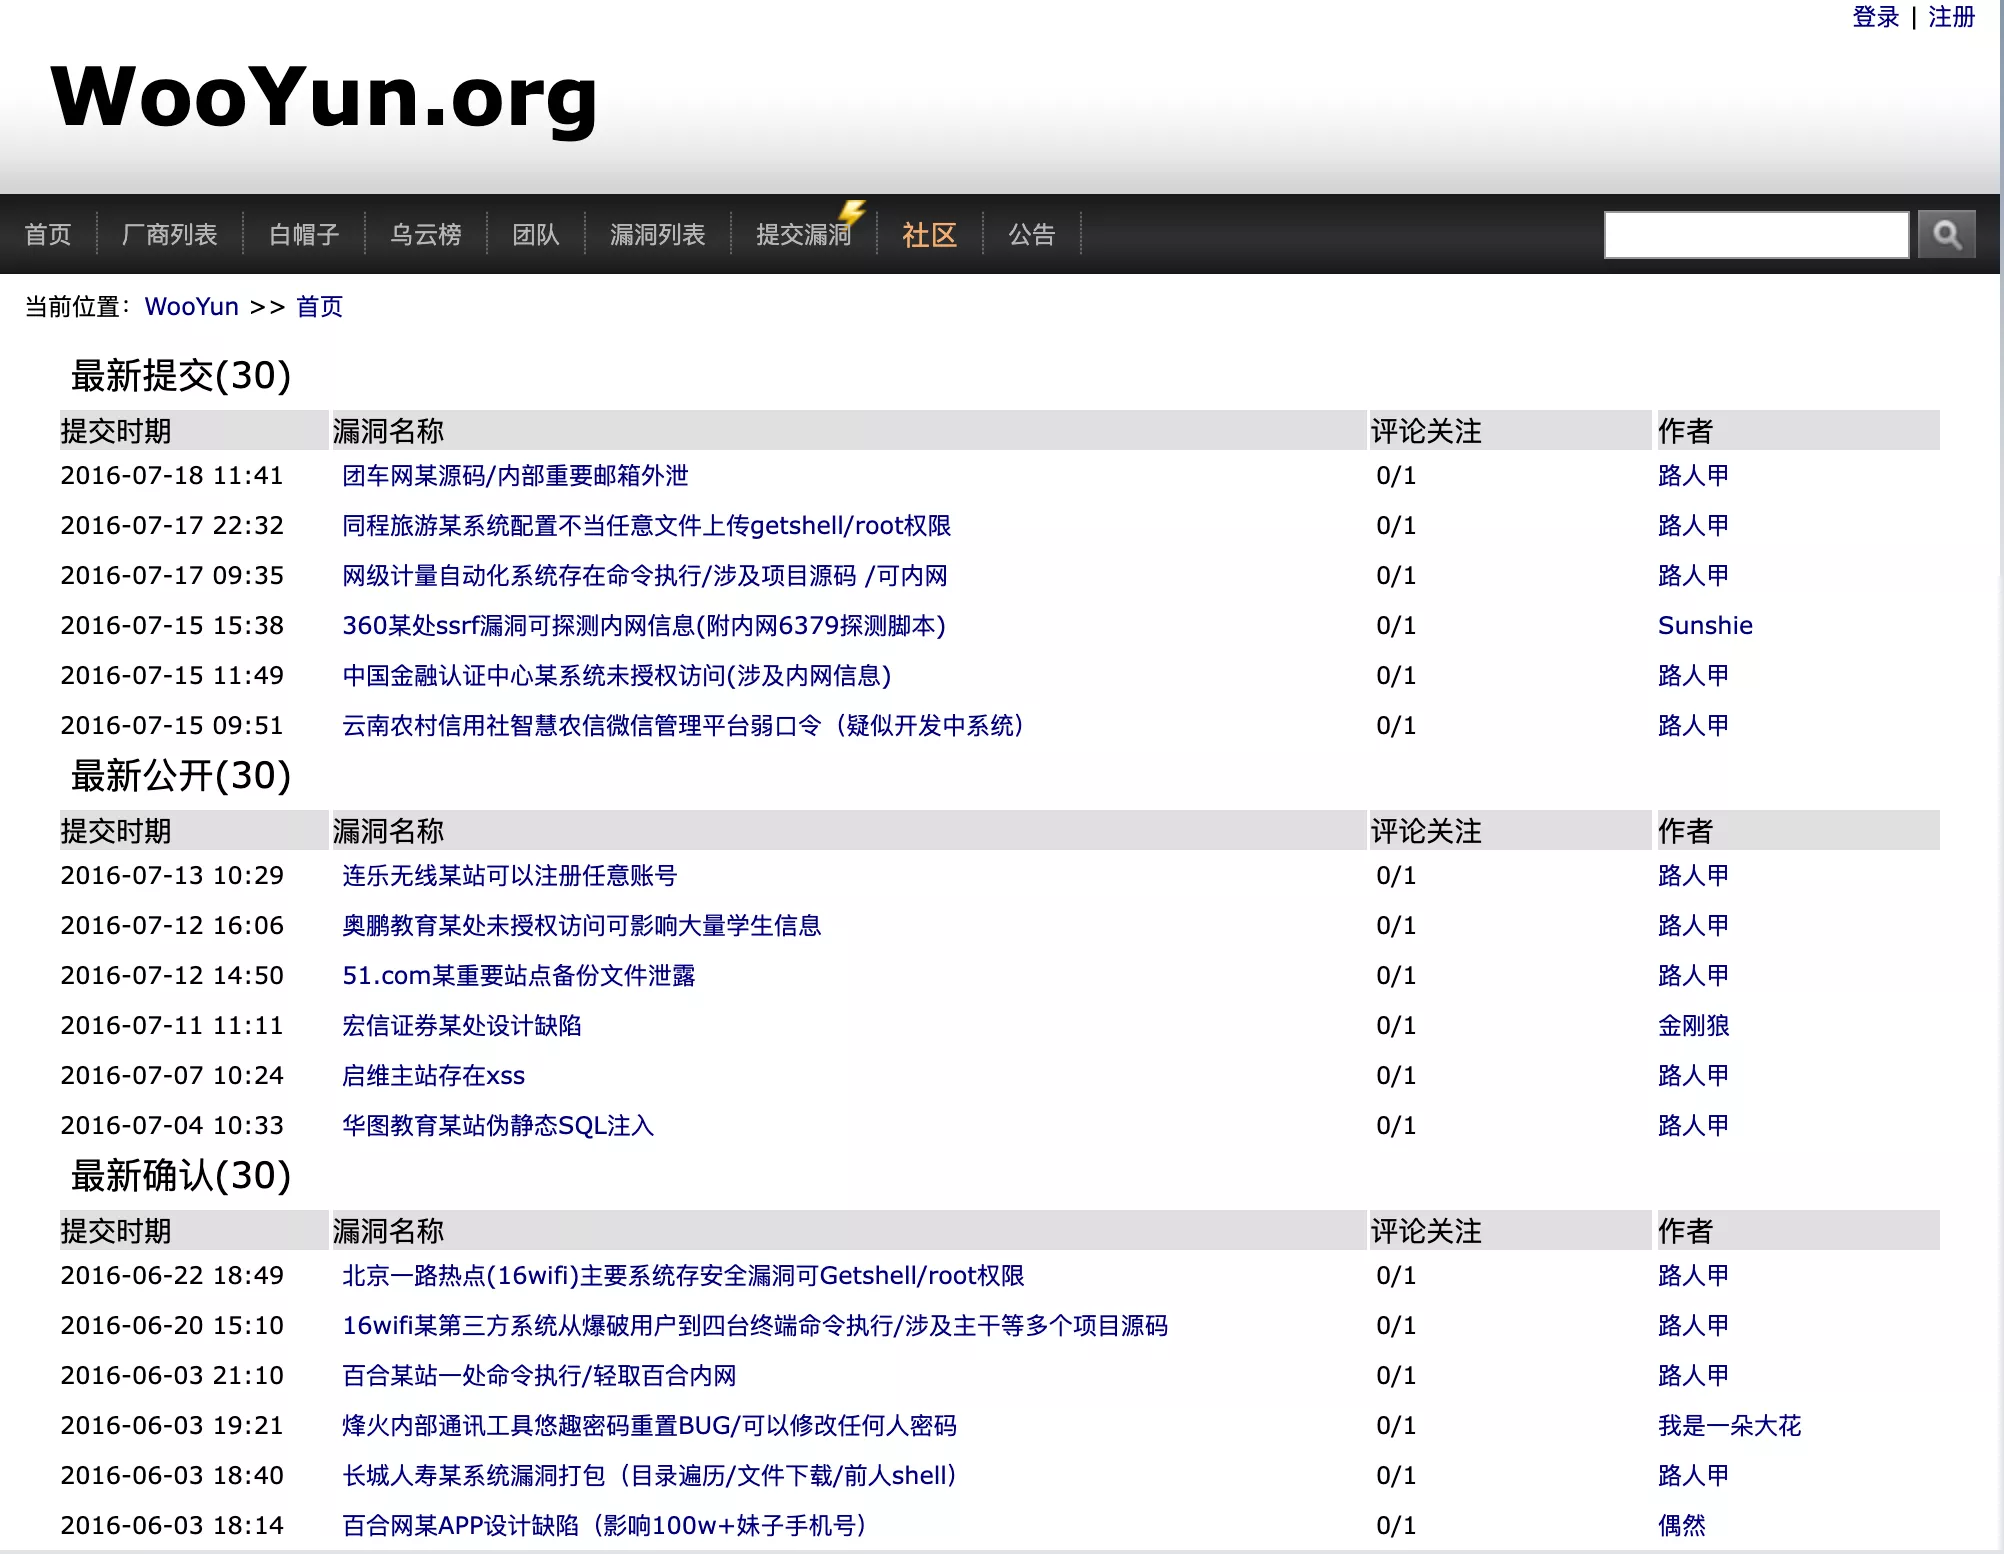 Homepage of the WooYun Website